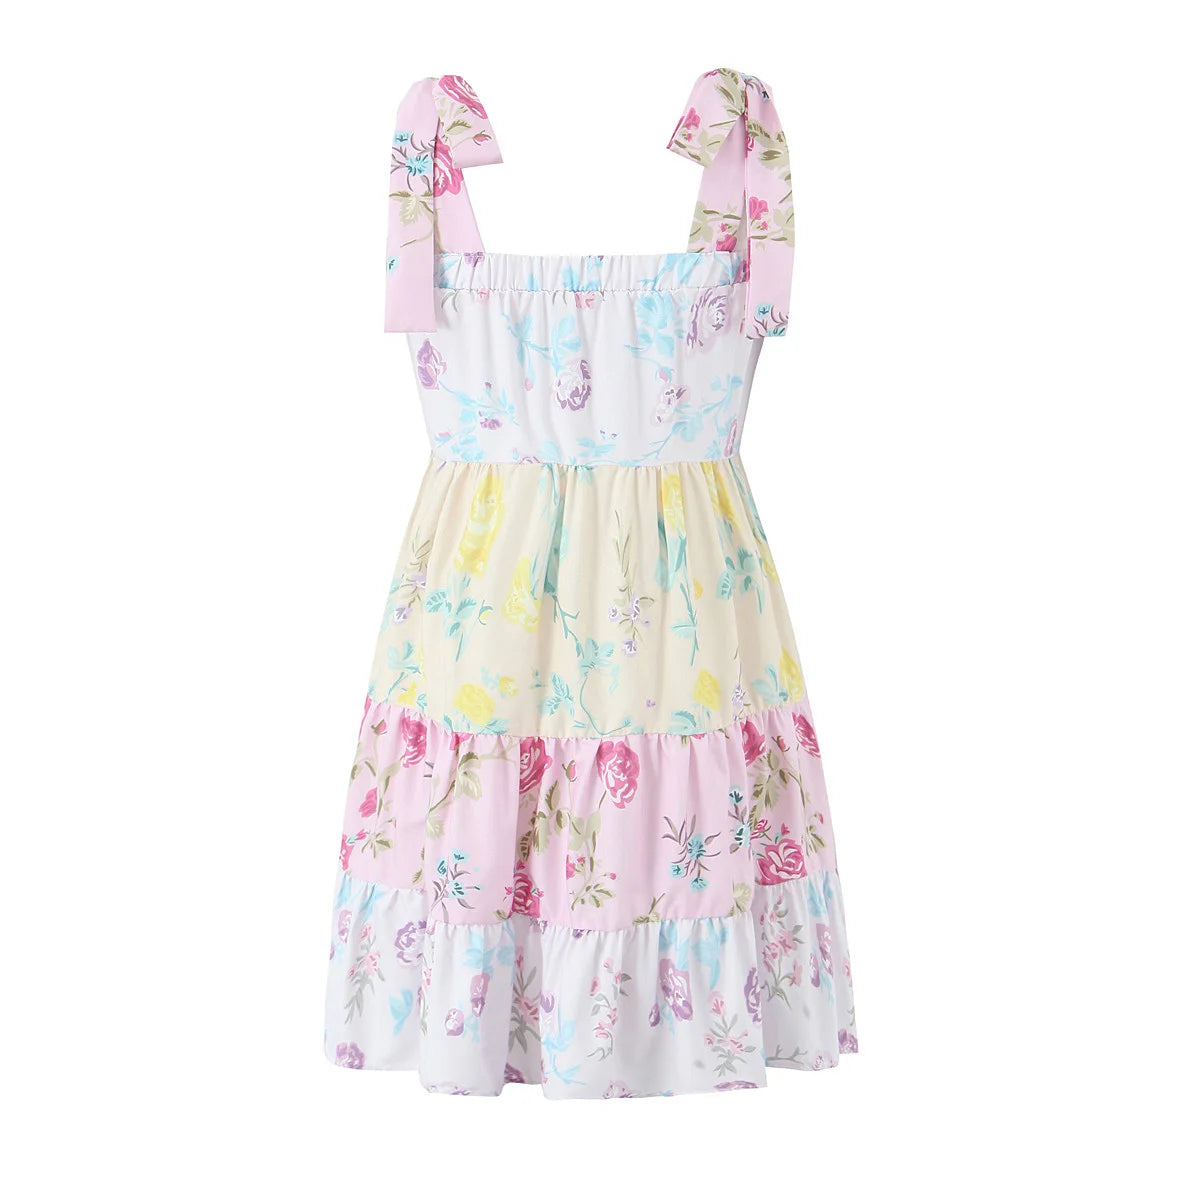 Kleid mit Blumenmuster und Bindebändern an den Schultern für den Sommer – Sommerkleid mit Stufen-Camisole